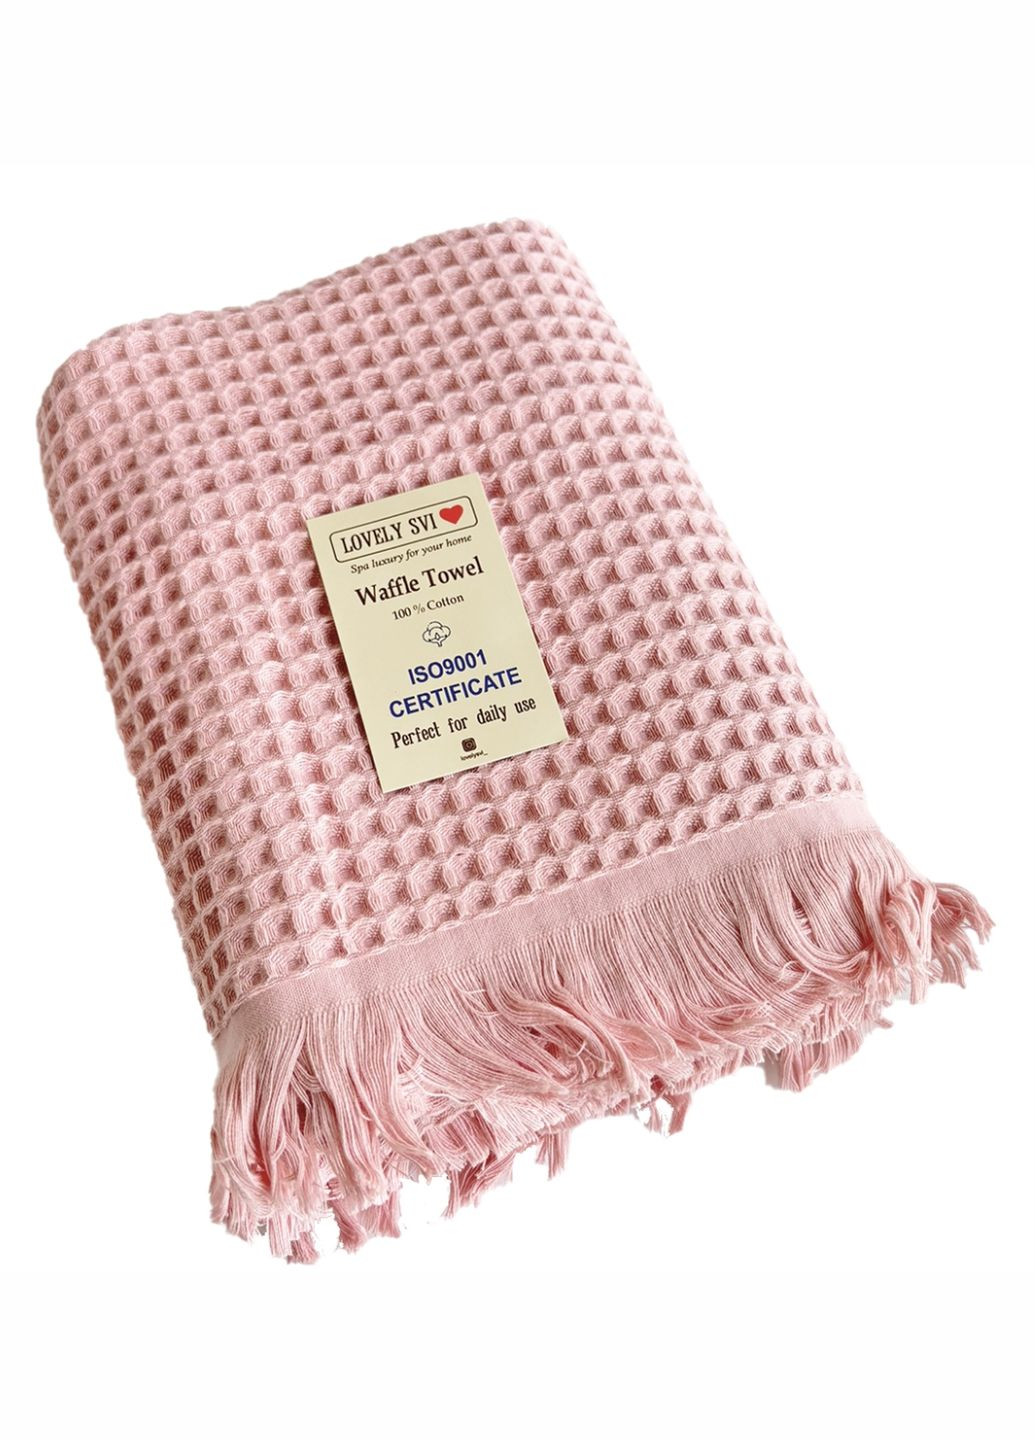 Lovely Svi вафельное полотенце - хлопок - для ванной, отелей, спа - xxl 90х180 см -розовый однотонный розовый производство - Китай